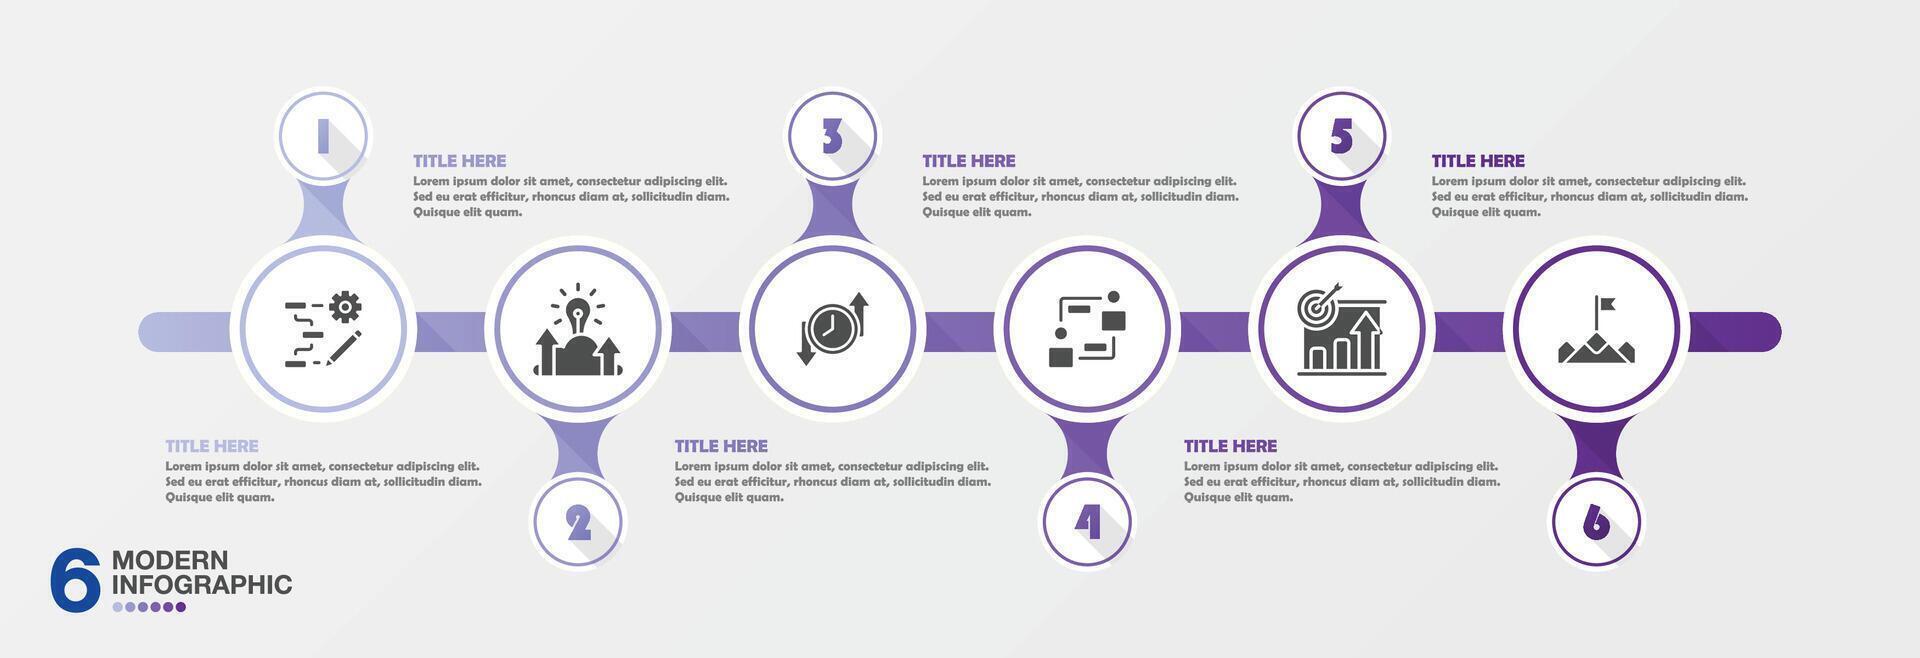 moderno infográfico com 6 passos e o negócio ícones para apresentação. vetor